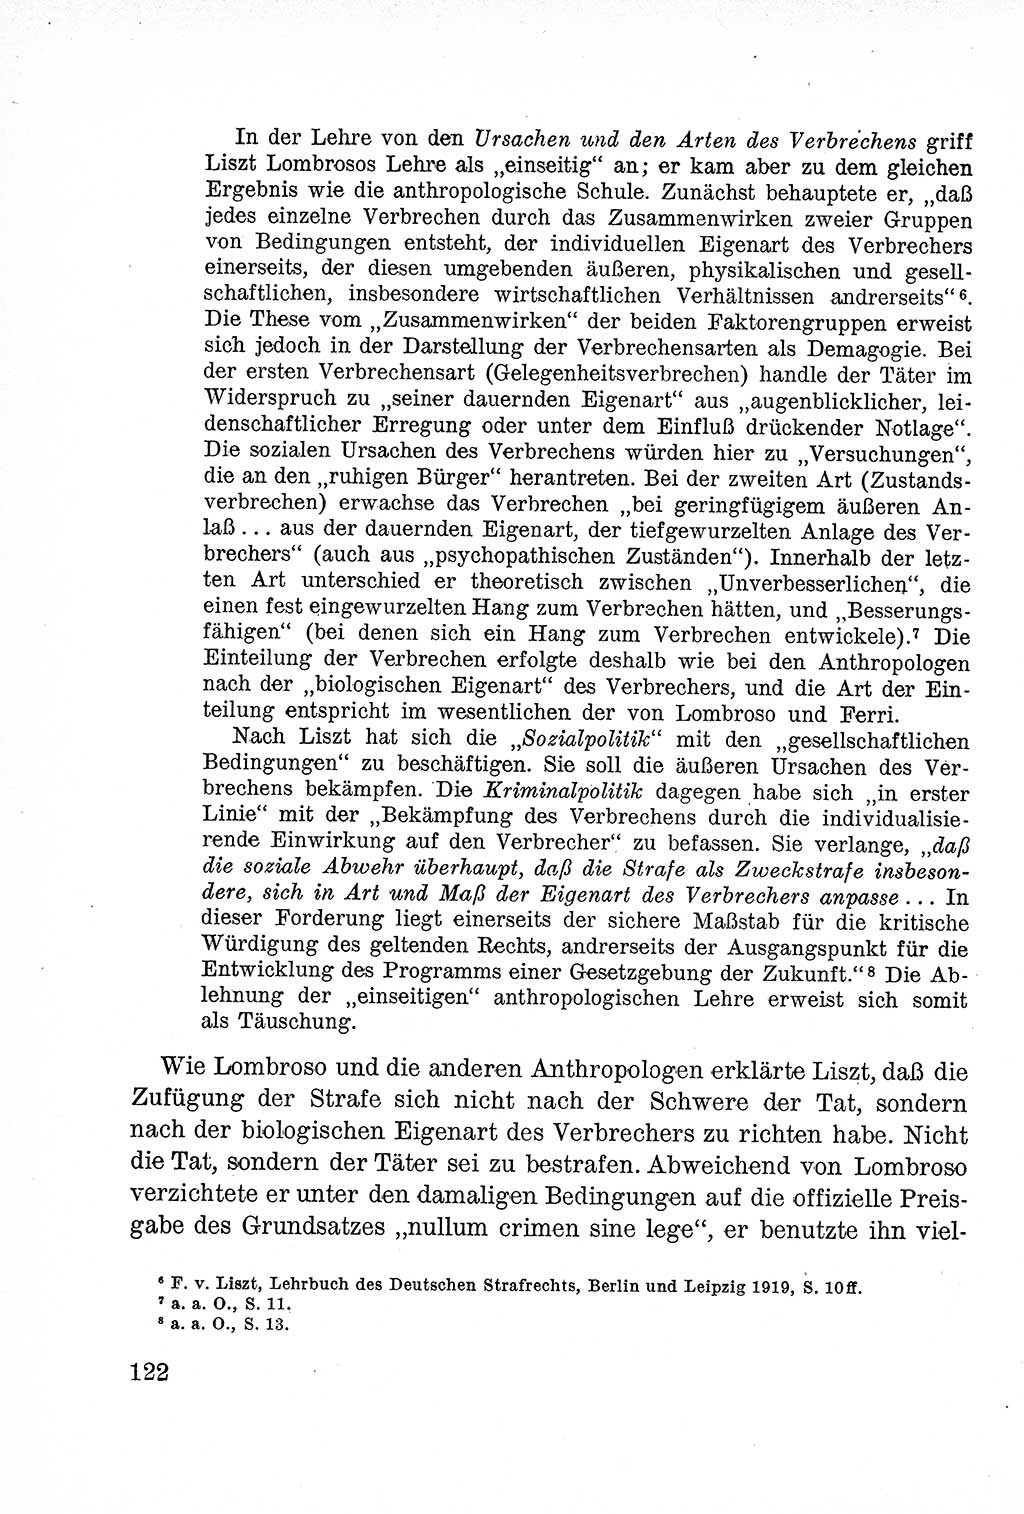 Lehrbuch des Strafrechts der Deutschen Demokratischen Republik (DDR), Allgemeiner Teil 1957, Seite 122 (Lb. Strafr. DDR AT 1957, S. 122)